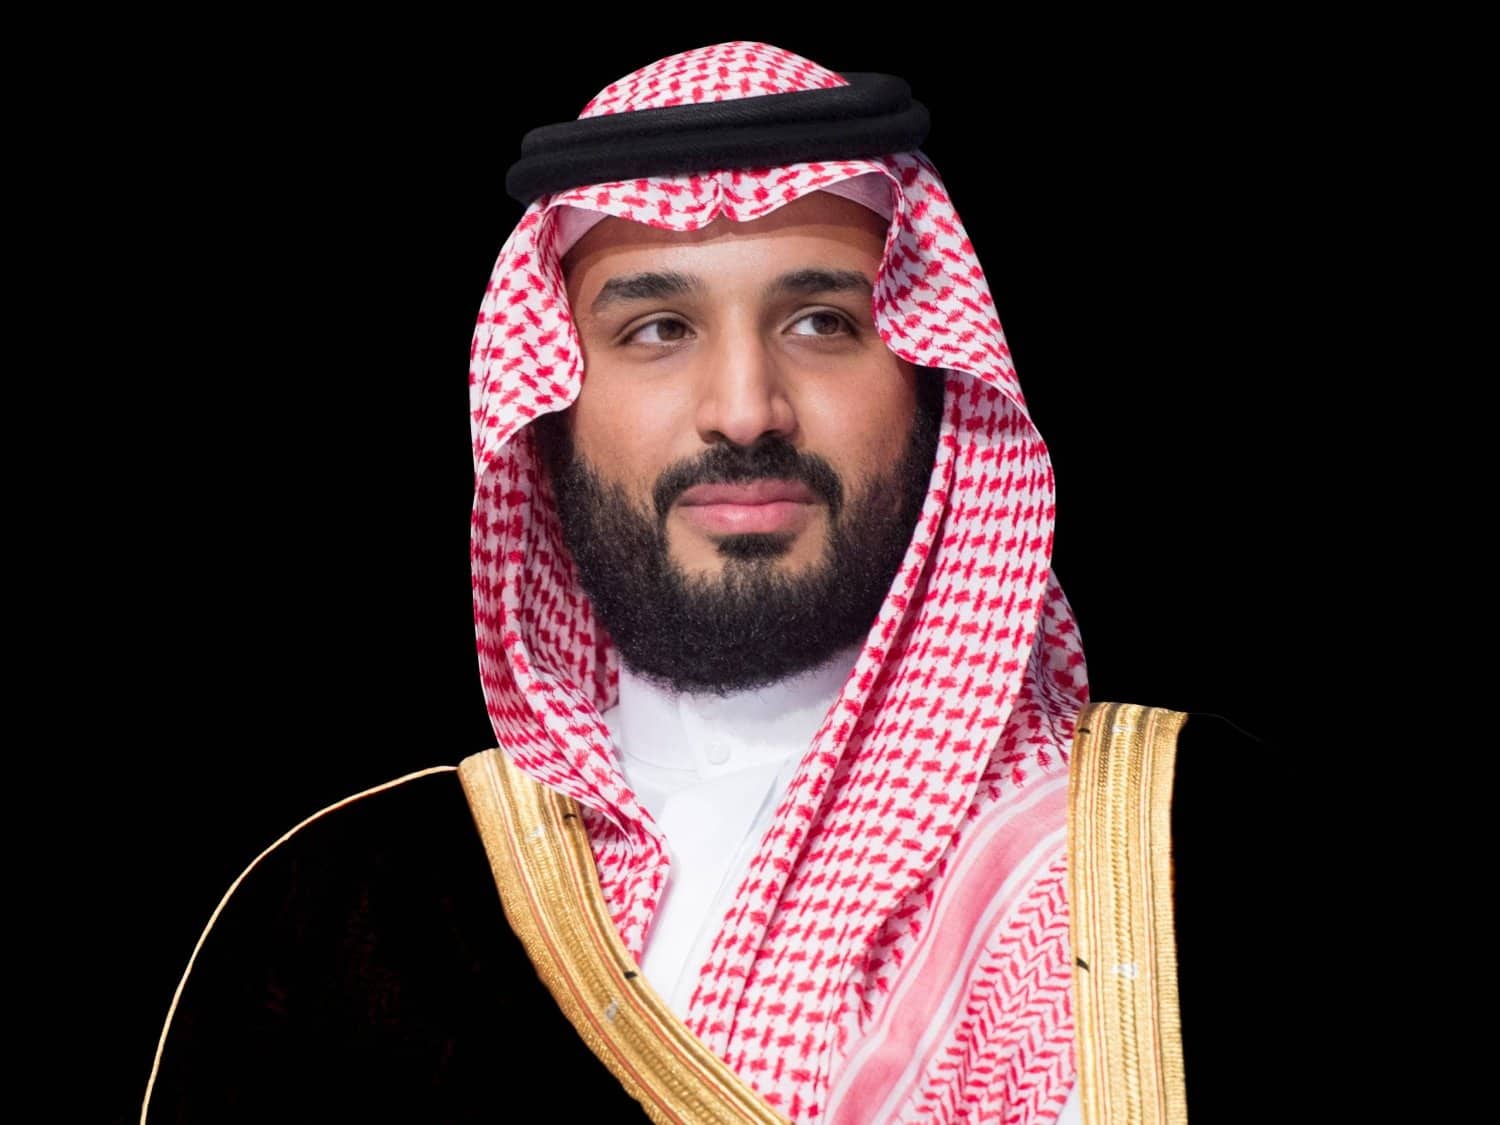   عاجل  ولي العهد السعودي: المملكة ترفض بشكل قاطع التهجير القسري للشعب الفلسطيني 